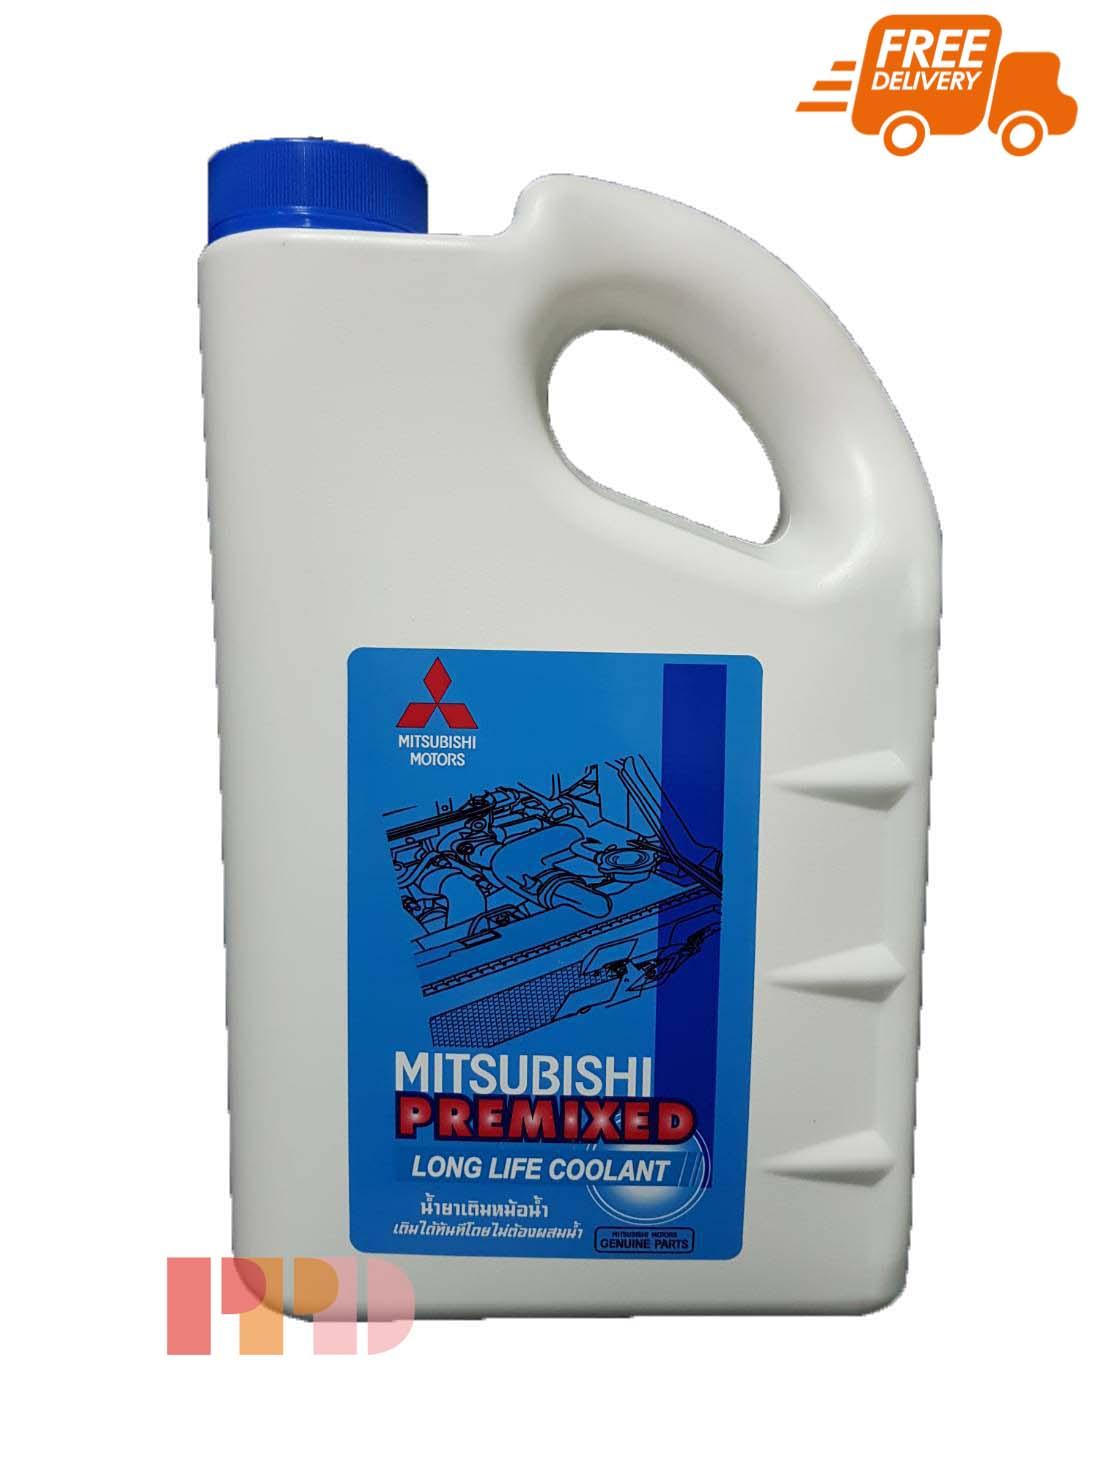 MITSUBISHI น้ำยาเติมหม้อน้ำ ขนาด 5 ลิตร PREMIXED ไม่ต้องผสมน้ำ สำหรับรถยนต์ MITSUBISHI ทุกรุ่น ( รหัสสินค้า MSC-99061T )